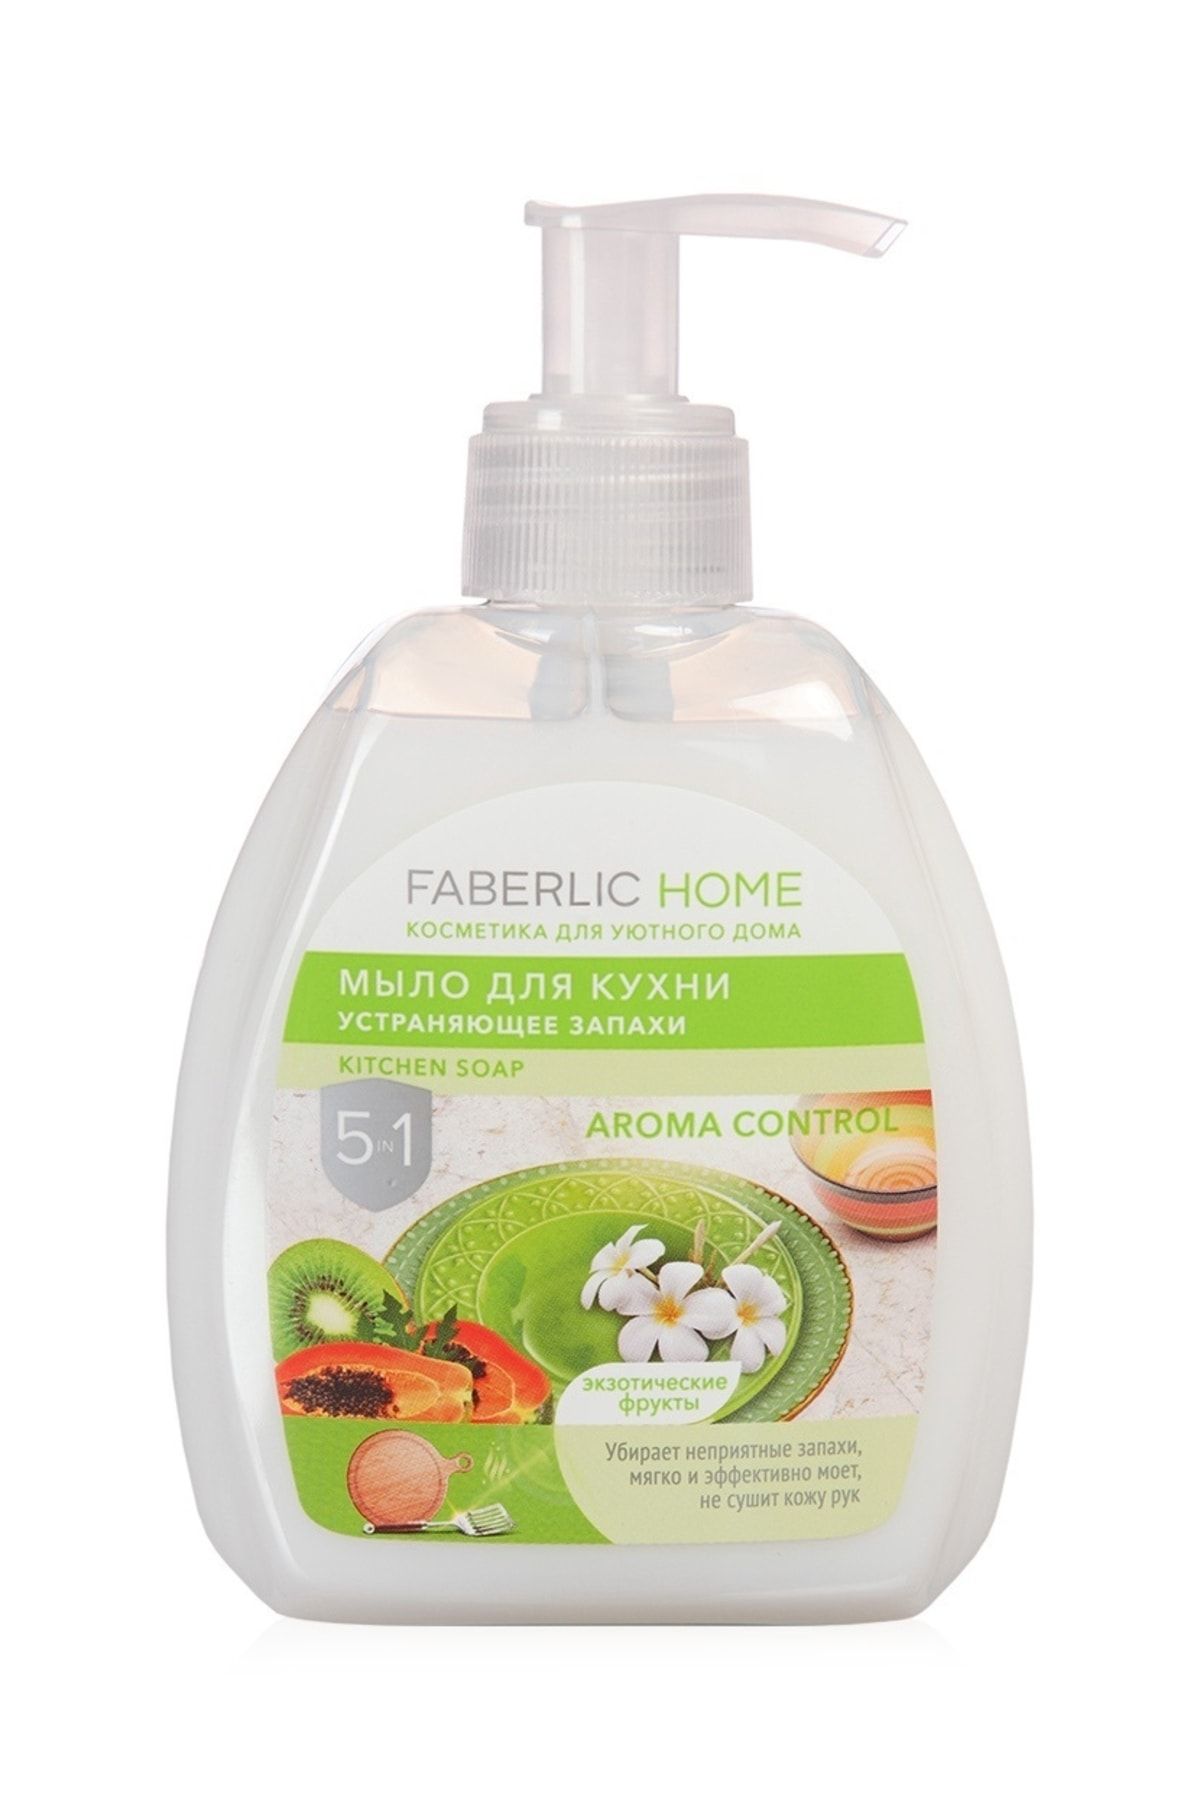 Faberlic Home Koku Giderici Mutfak Sıvı Sabunu "ekzotik Meyveler"